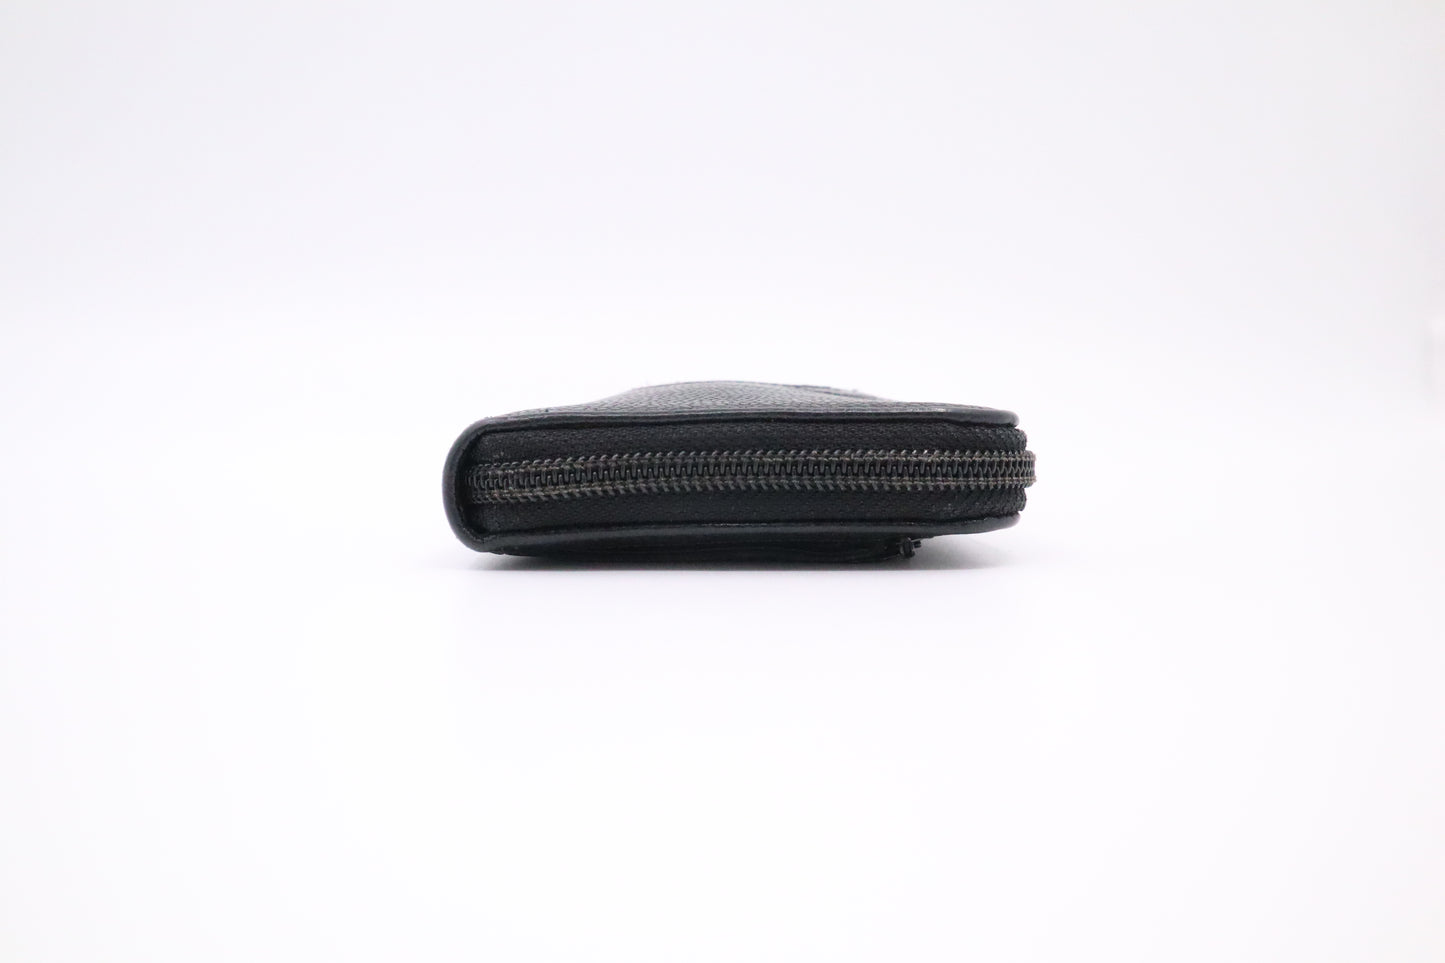 Chanel Long Zippy Wallet in Black Caviar Leather